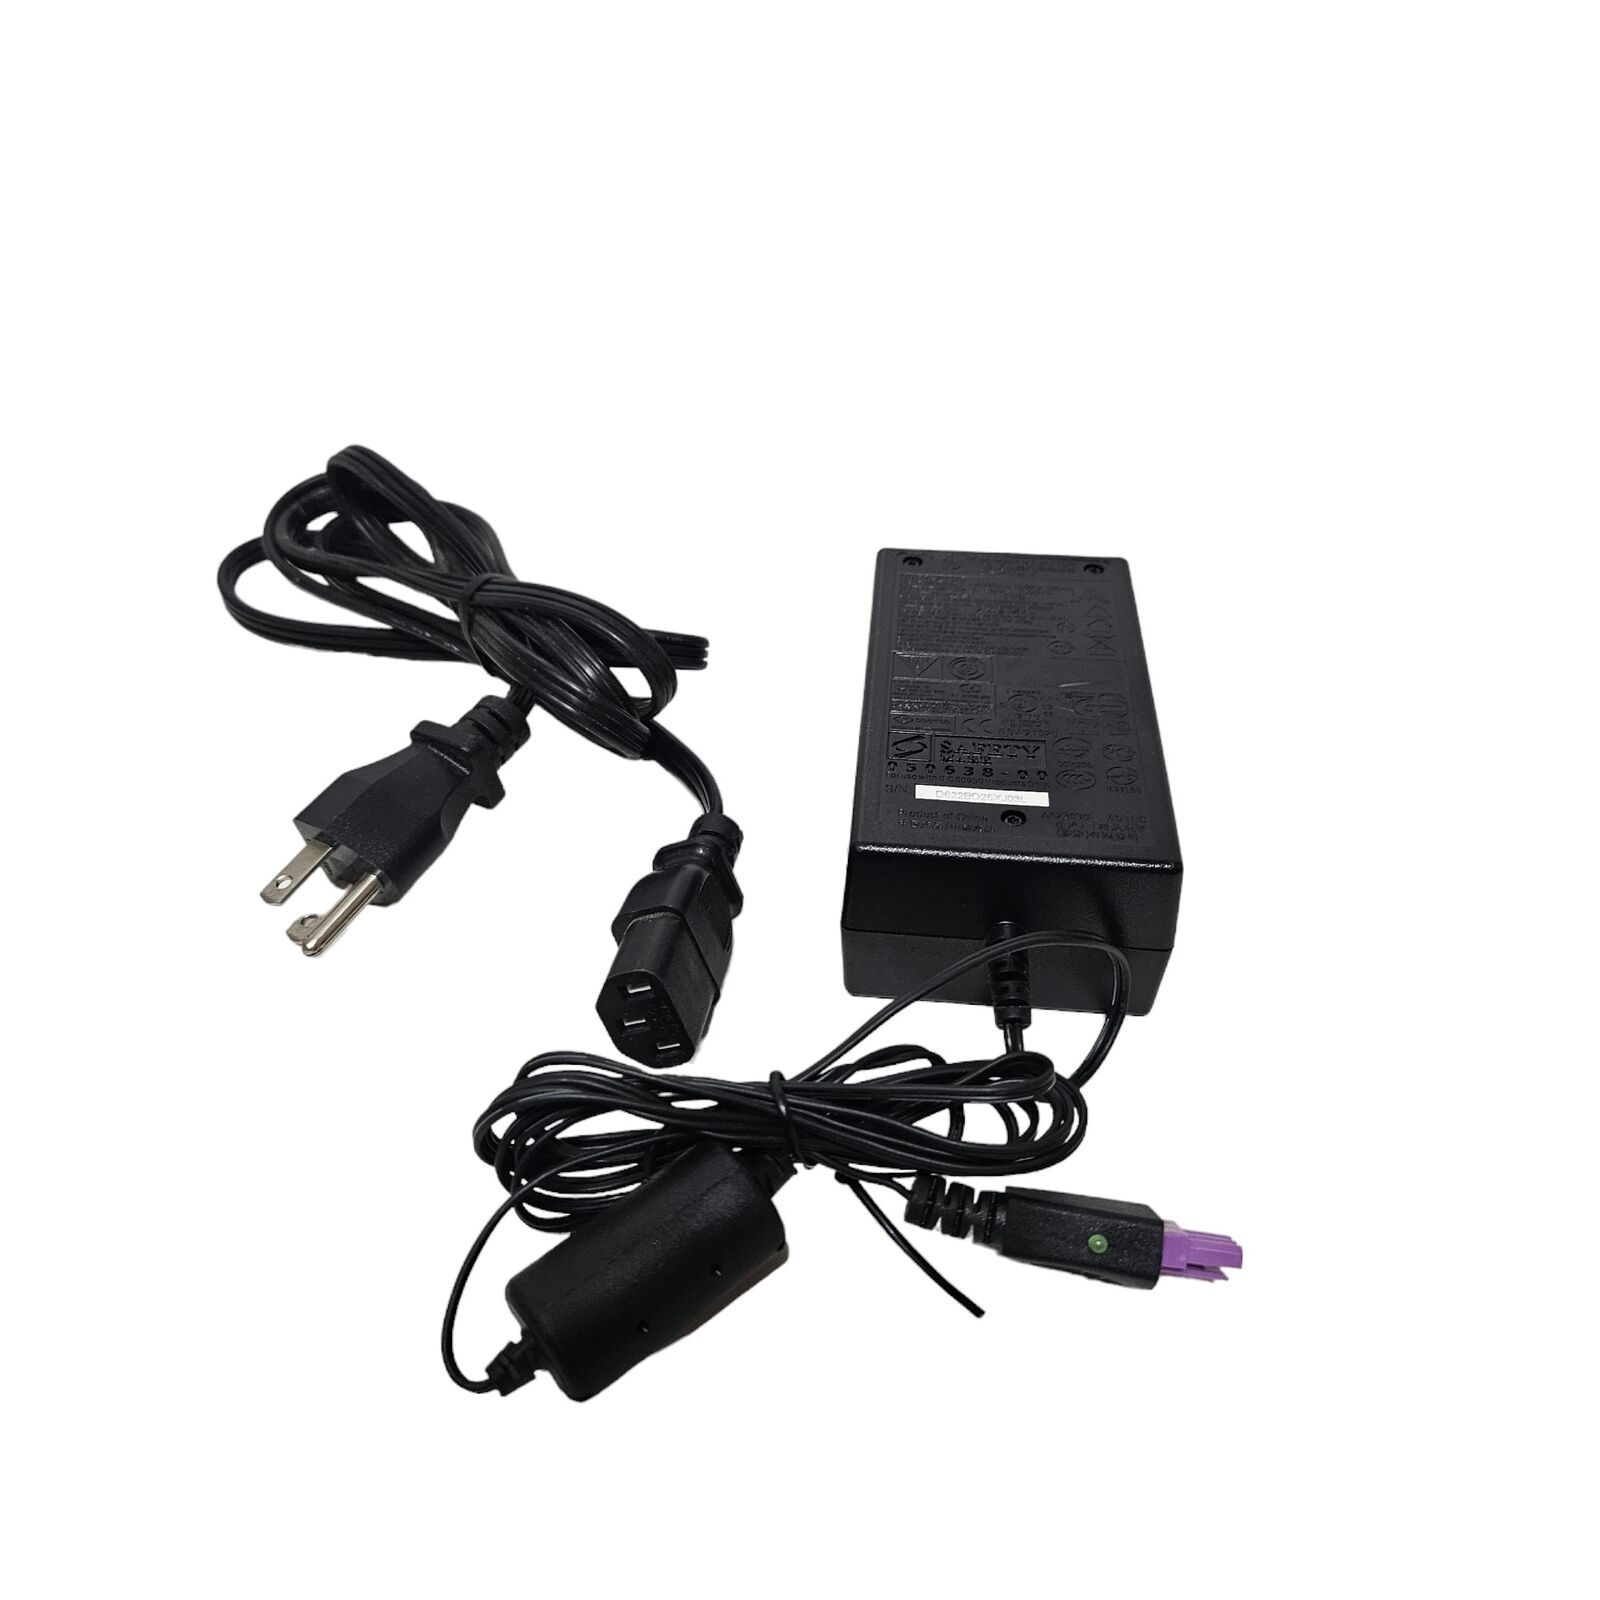 Genuine HP 0957-2105 32V AC Power Adapter for OfficeJet 6000 6500 7000